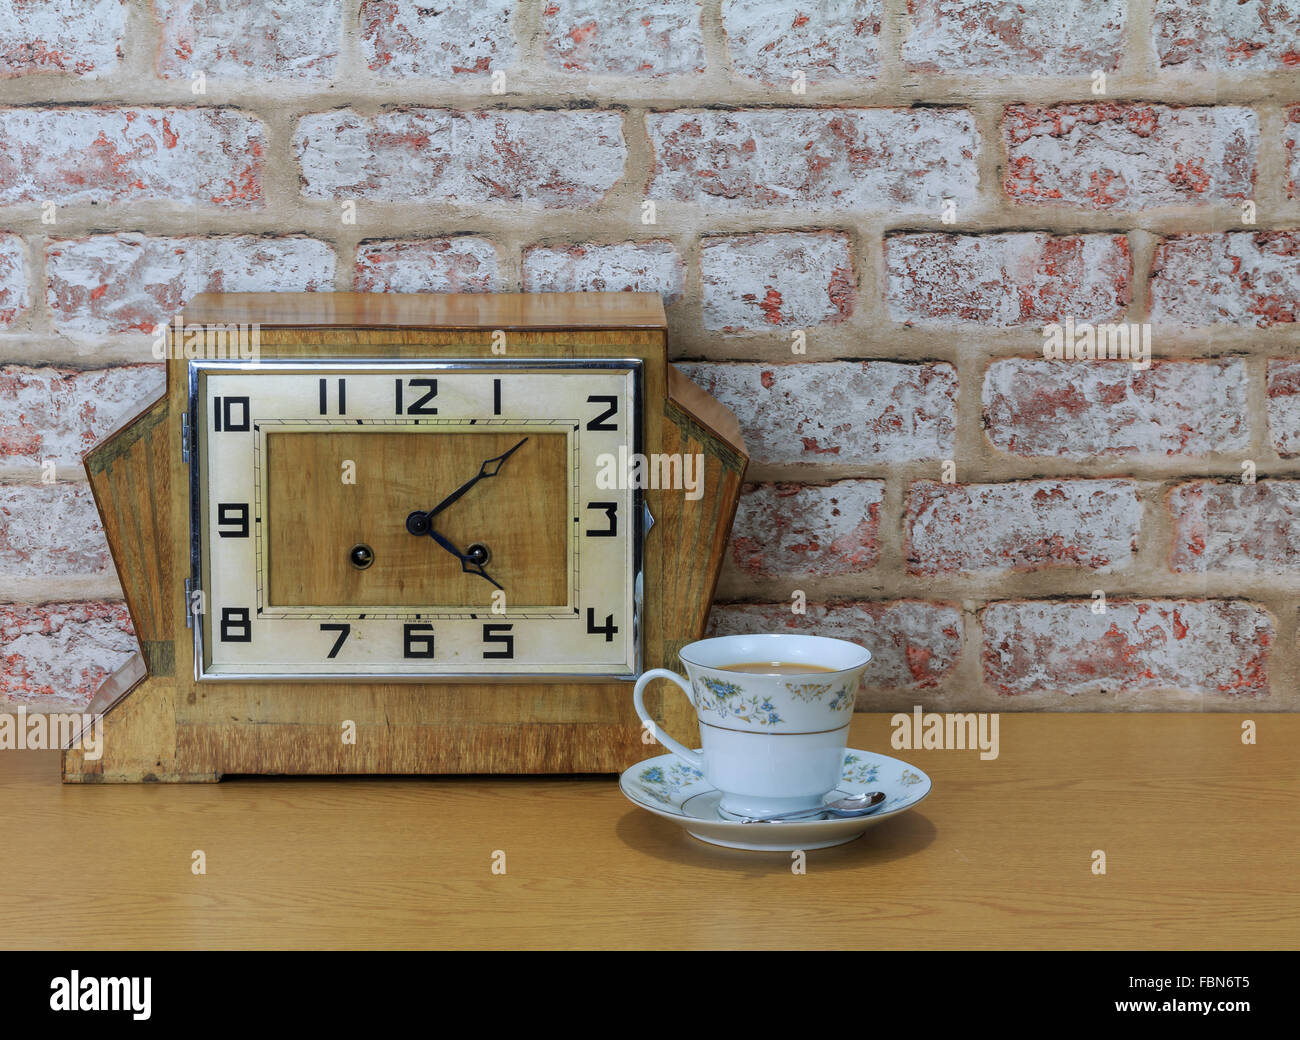 Hölzerne Mantel Vintage Art-déco-Uhr mit alten Ziegel Wand Effekt Hintergrund und China Teetasse und mit Tee gefüllt Stockfoto